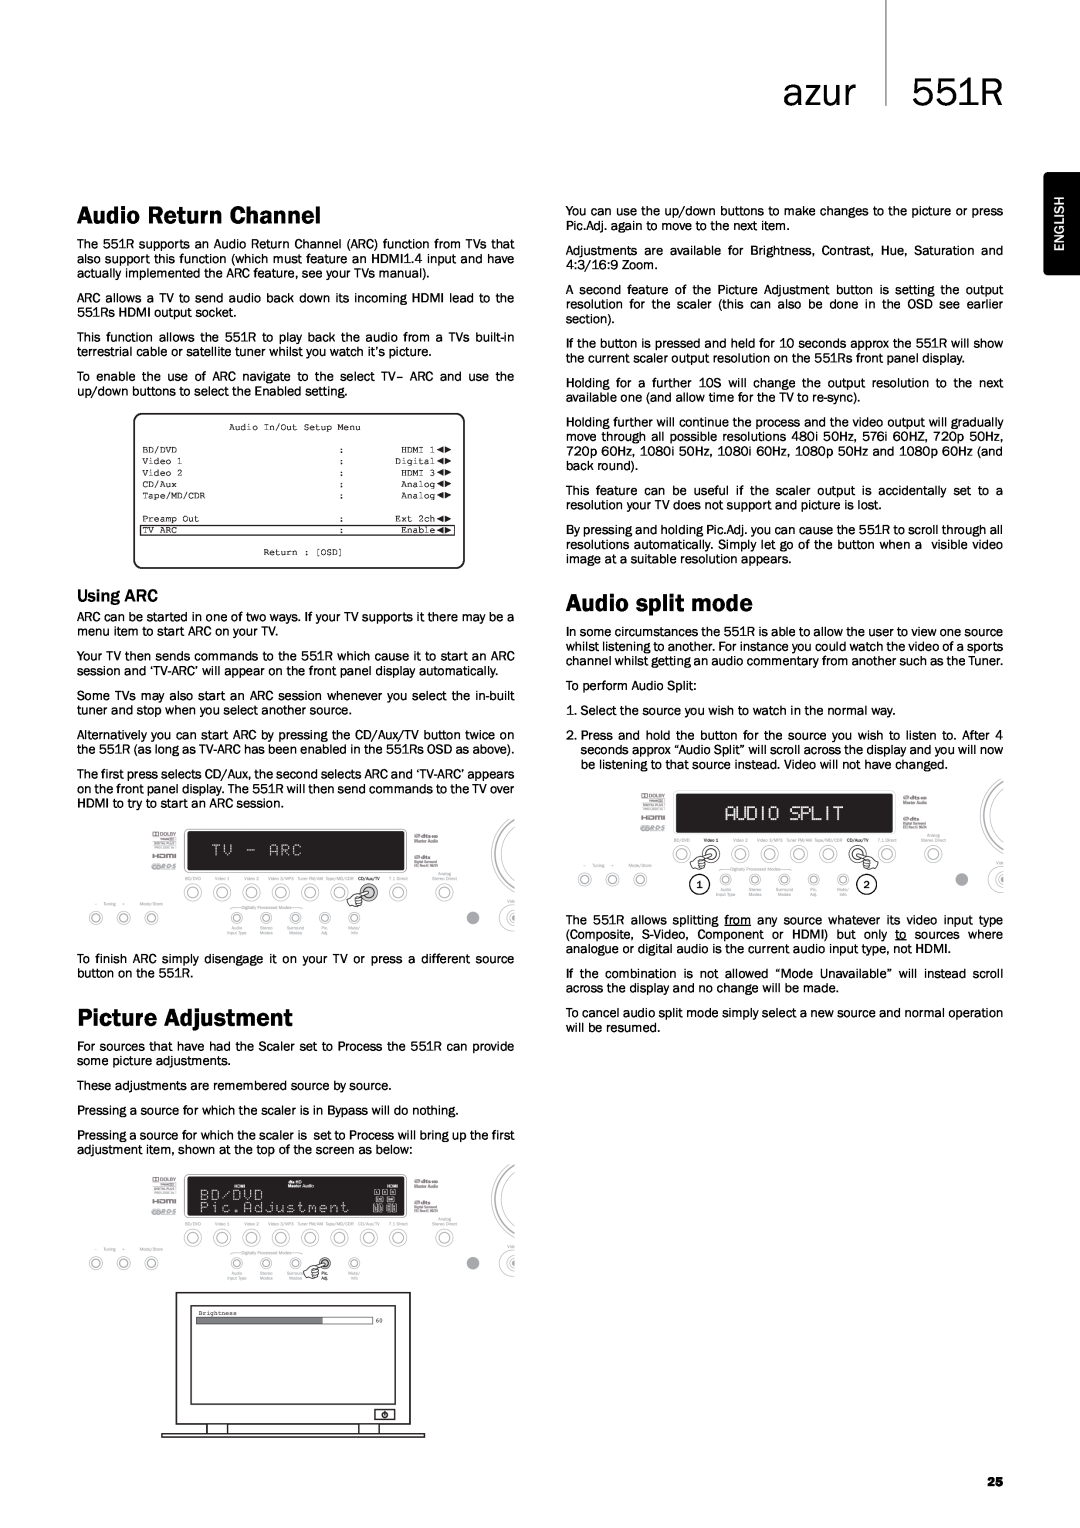 Cambridge Audio user manual AudioReturnChannel, PictureAdjustment, Audiosplitmode, azur 551R, English 